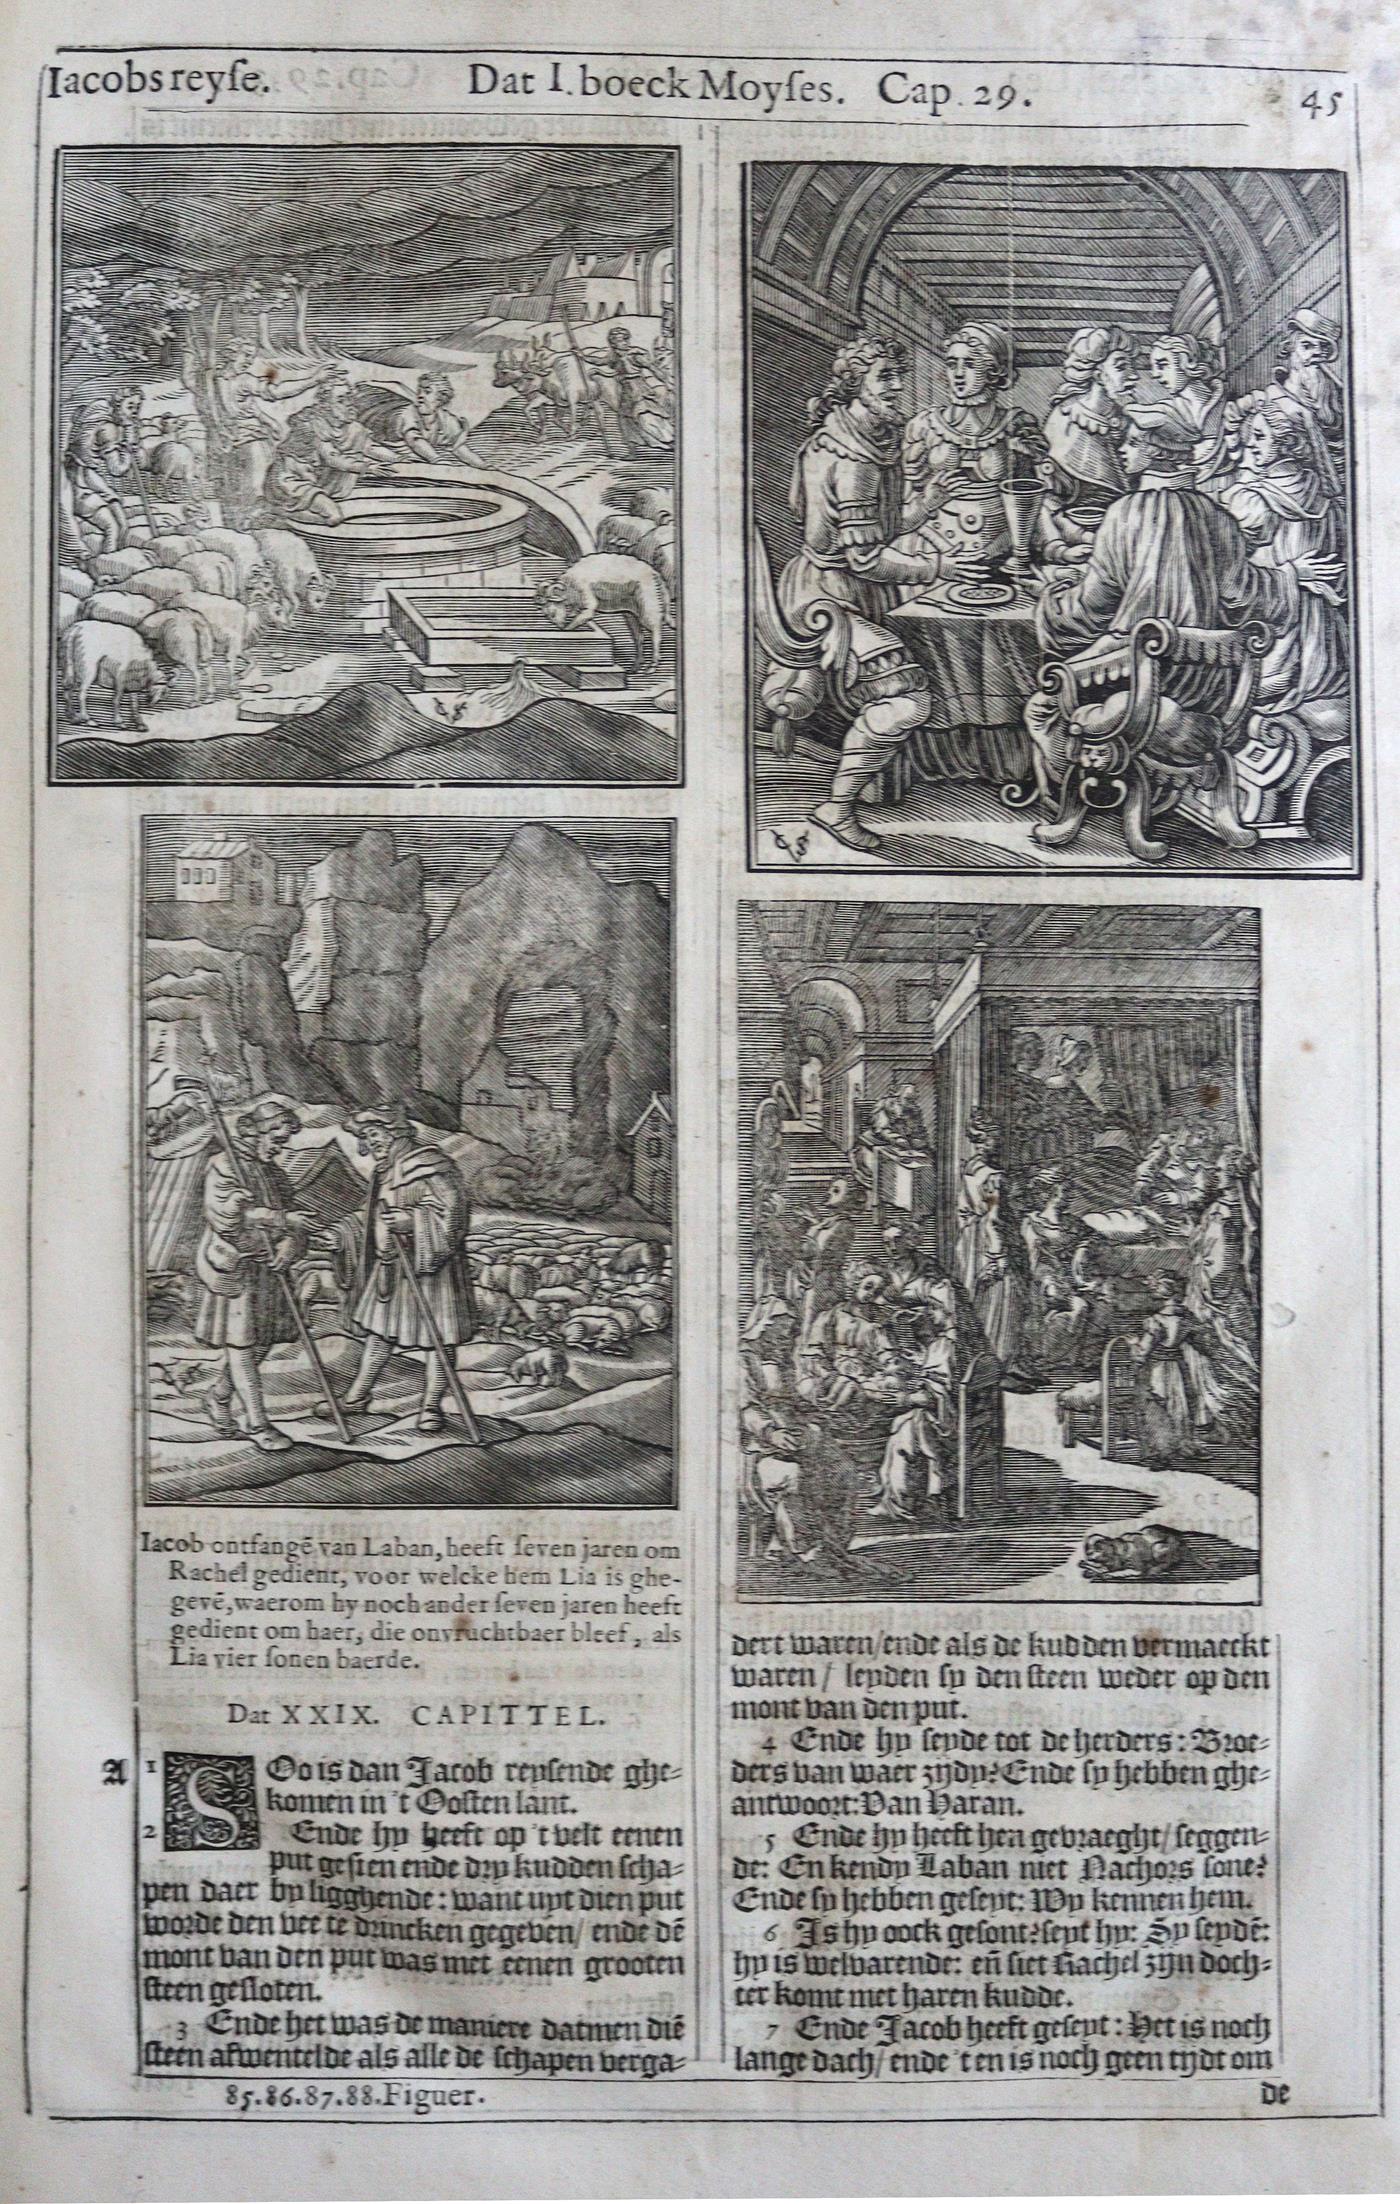 Biblia neerlandica. - Image 3 of 6